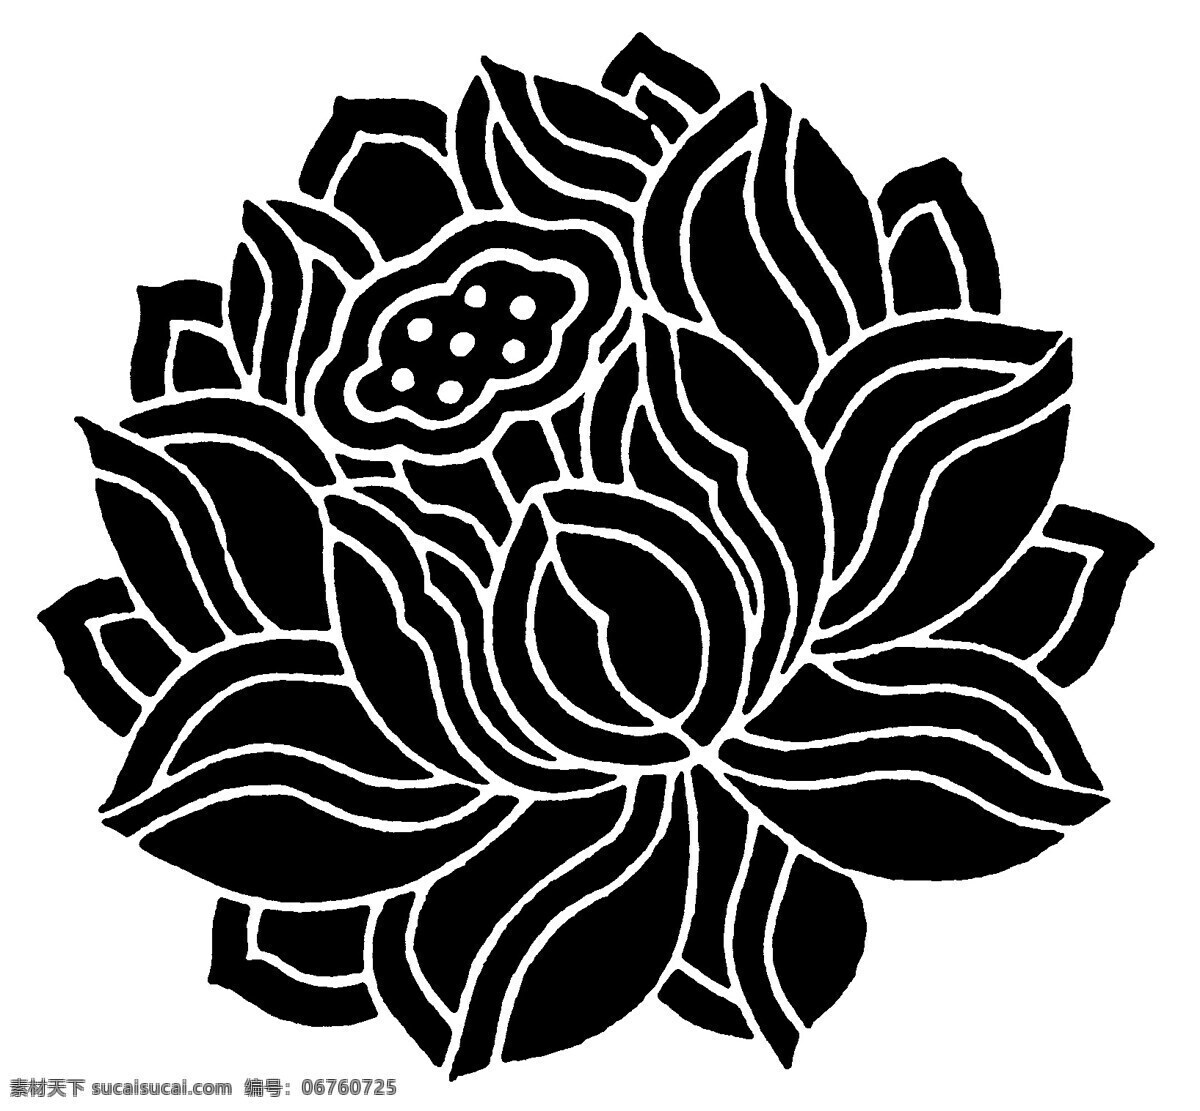 清代装饰图案 中国传统图案 黑色花朵 花儿 装饰花朵 设计素材 装饰图案 书画美术